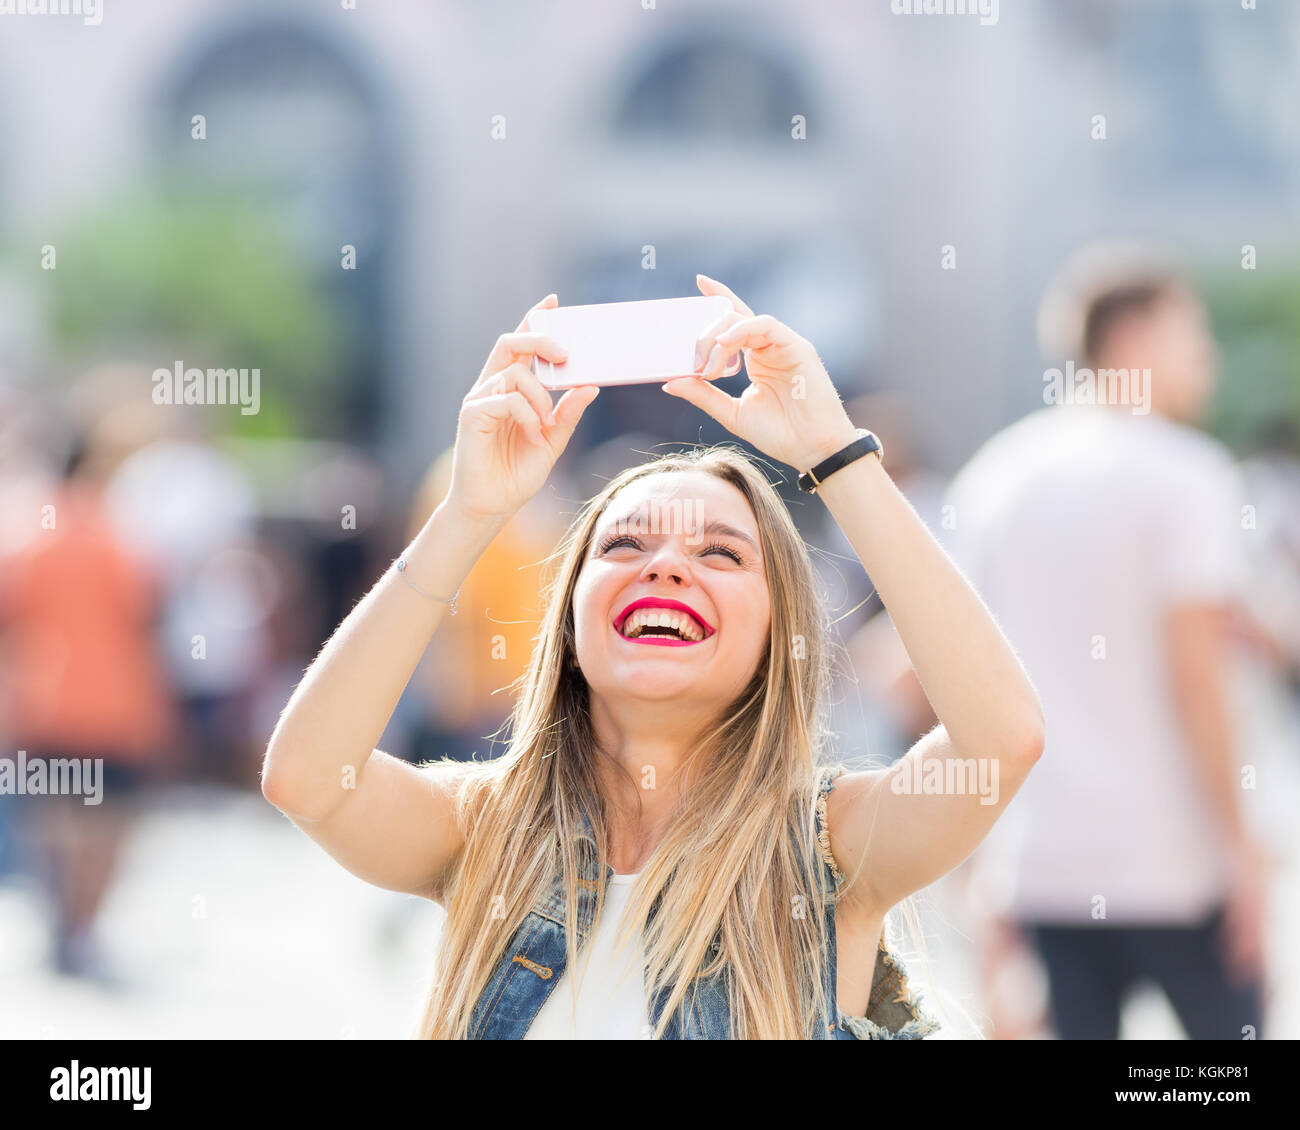 Jolie adolescente touristiques prenant une photo avec son téléphone portable Banque D'Images